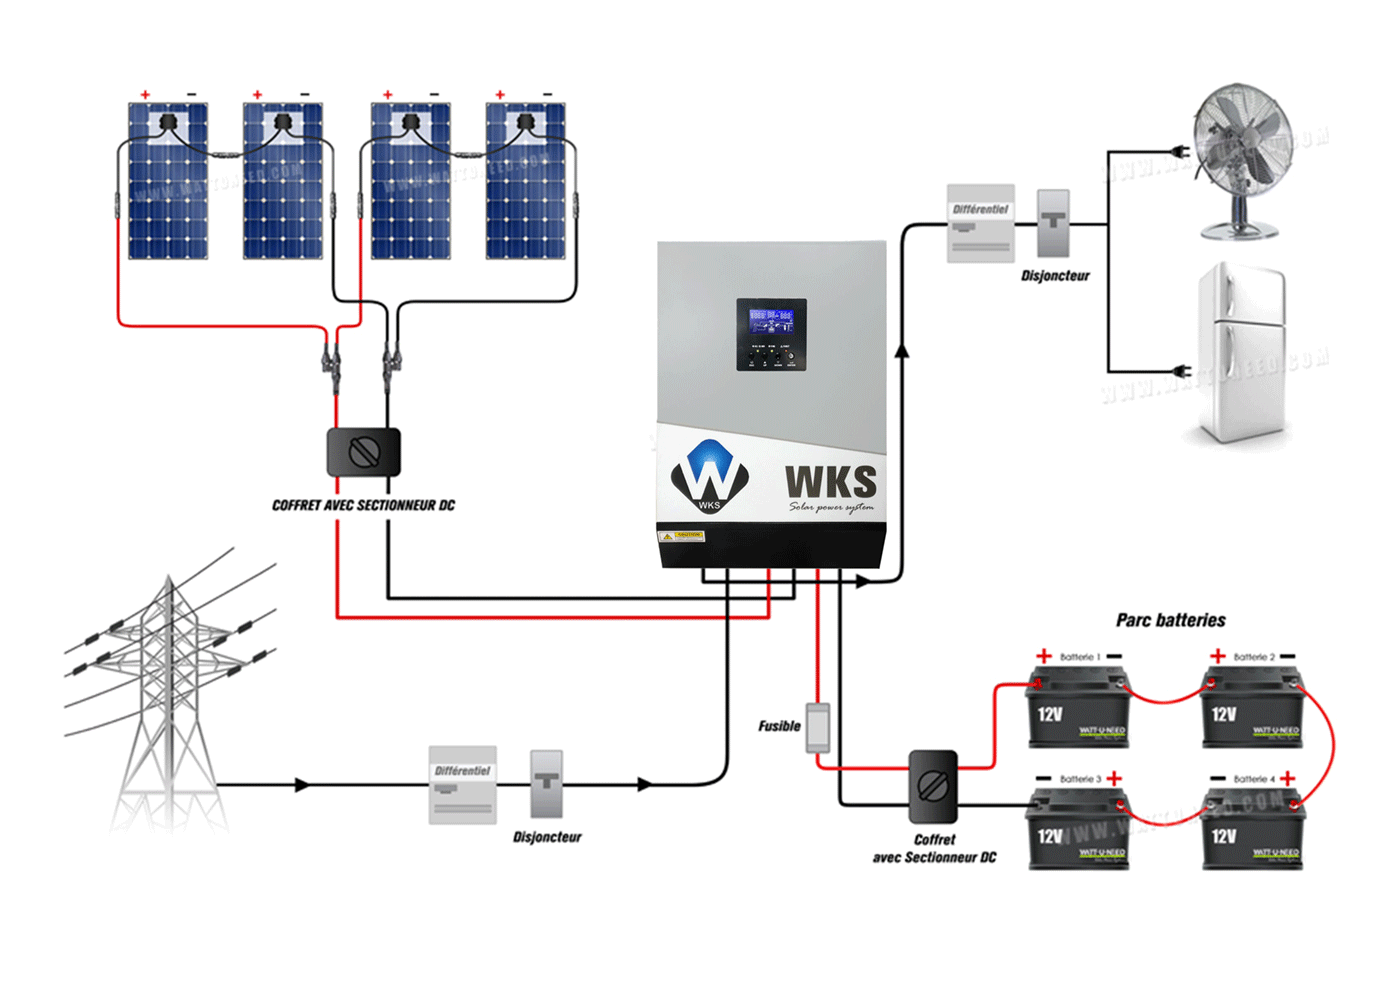 WKS hybrid inverter operating diagram